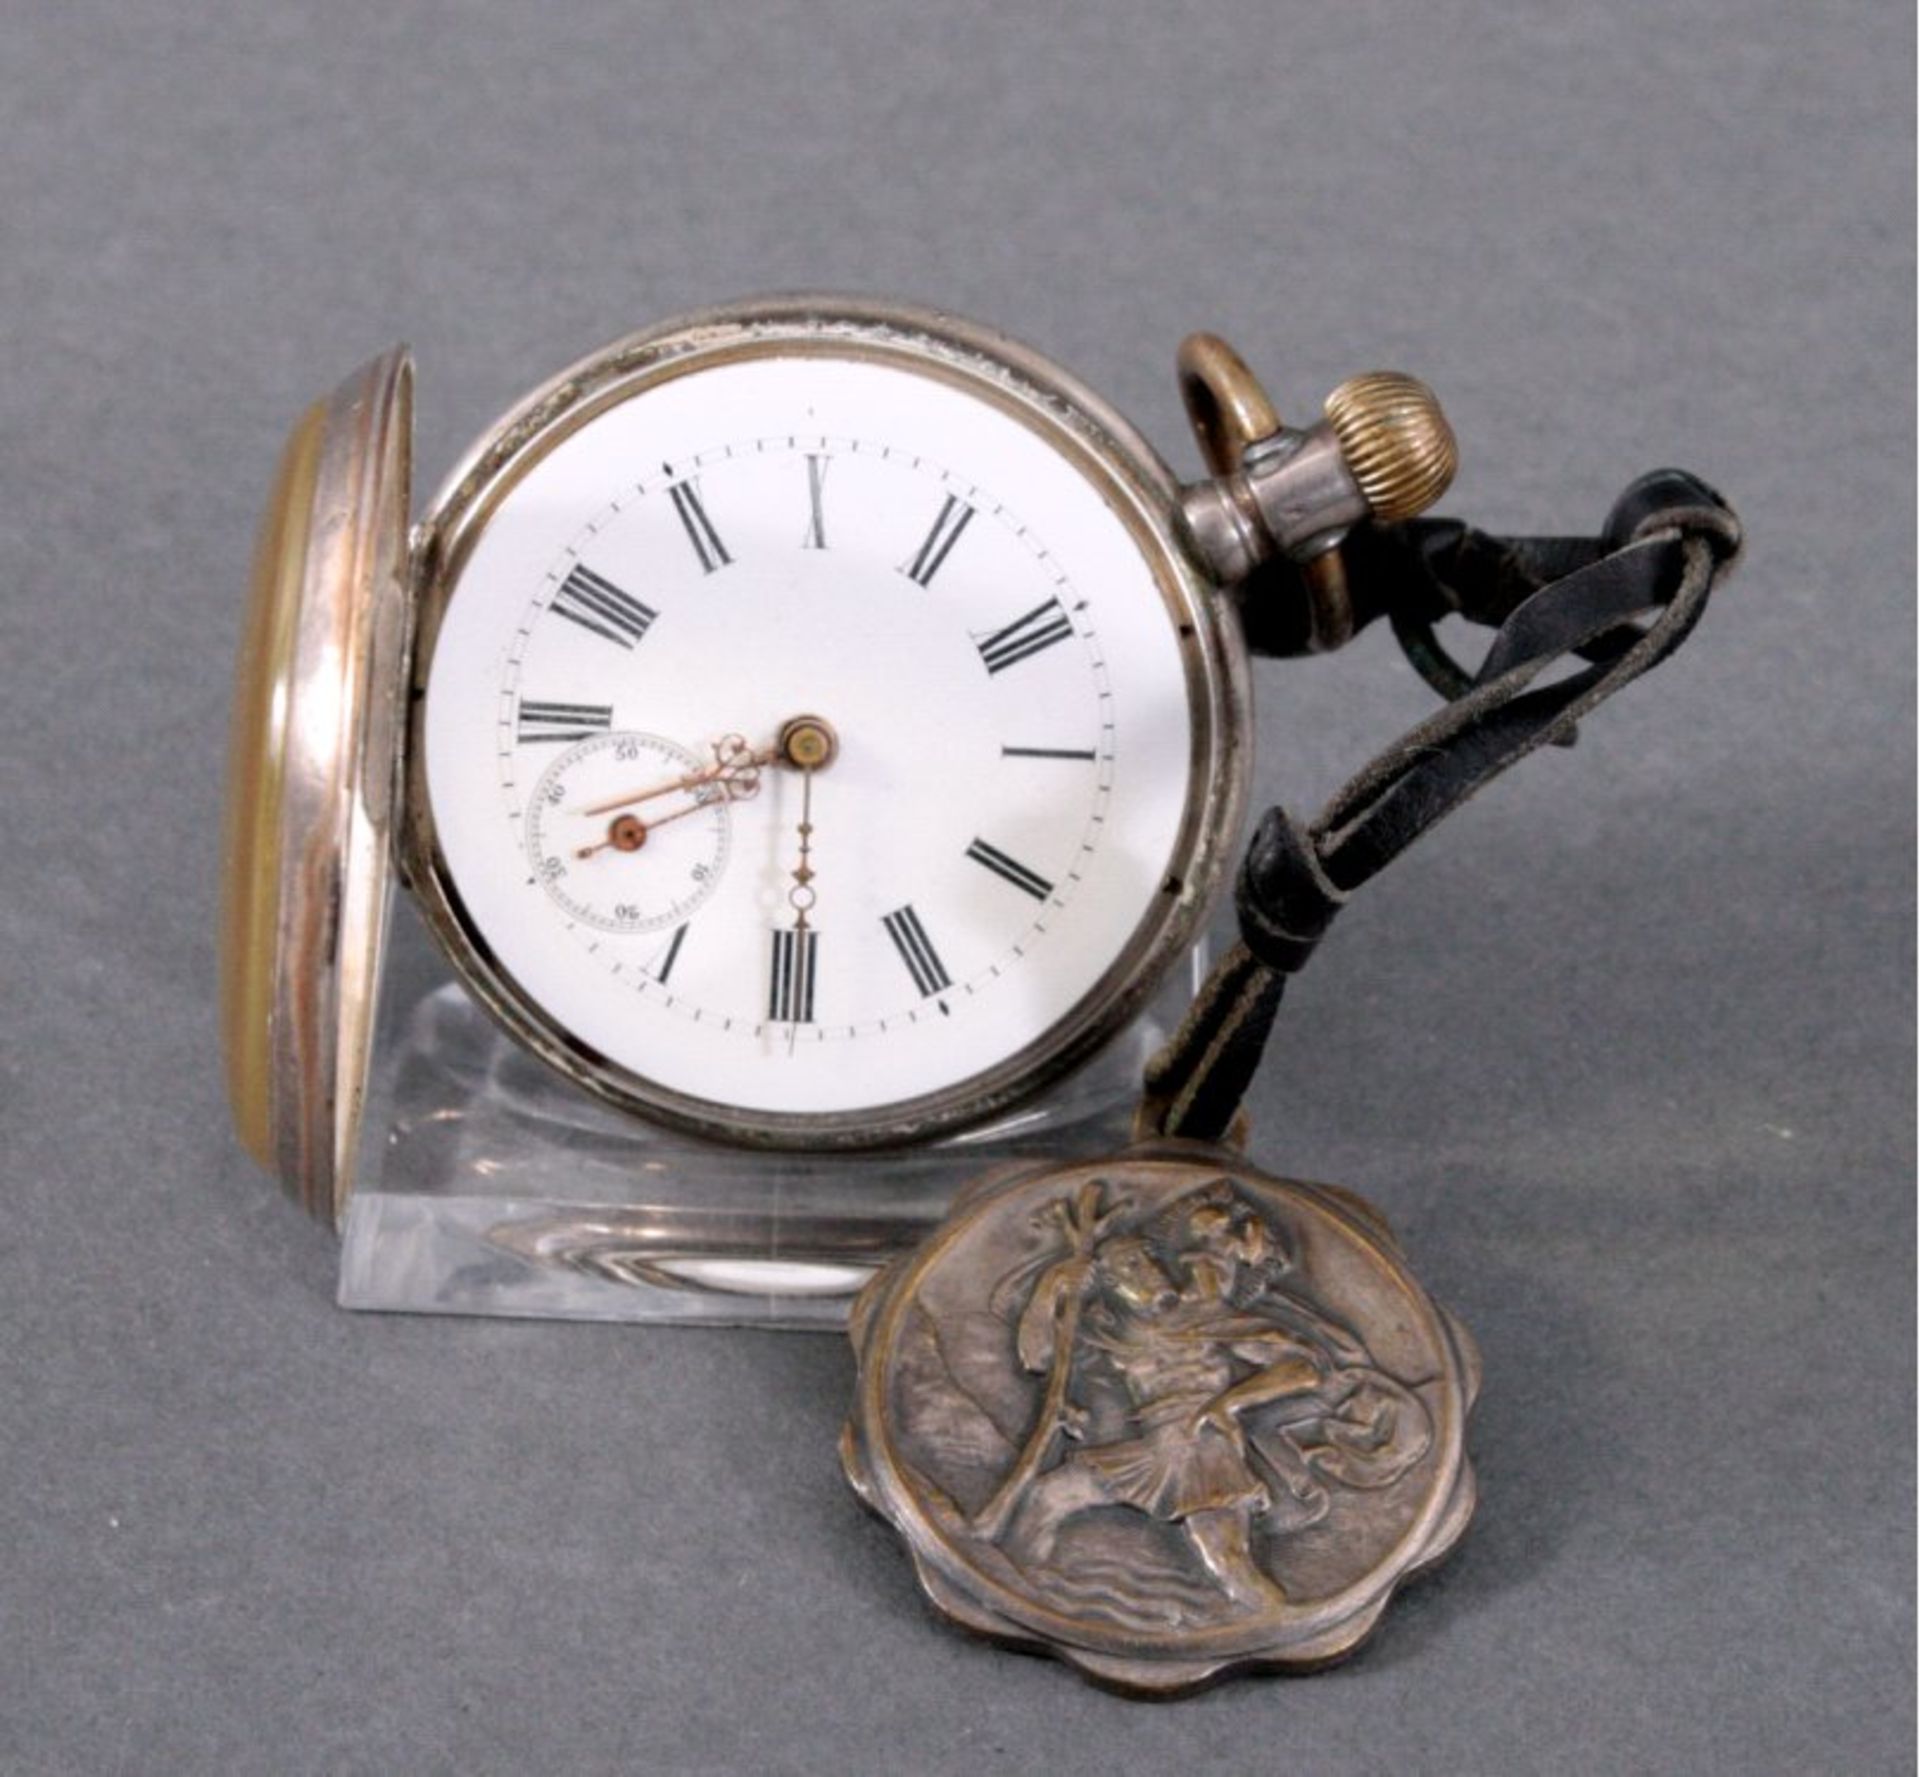 Silberne Taschenuhr um 1900, Herst. Bäumer u. Cie.Deutsche Punze, 800er Silber, Emaillezifferblatt - Bild 2 aus 2